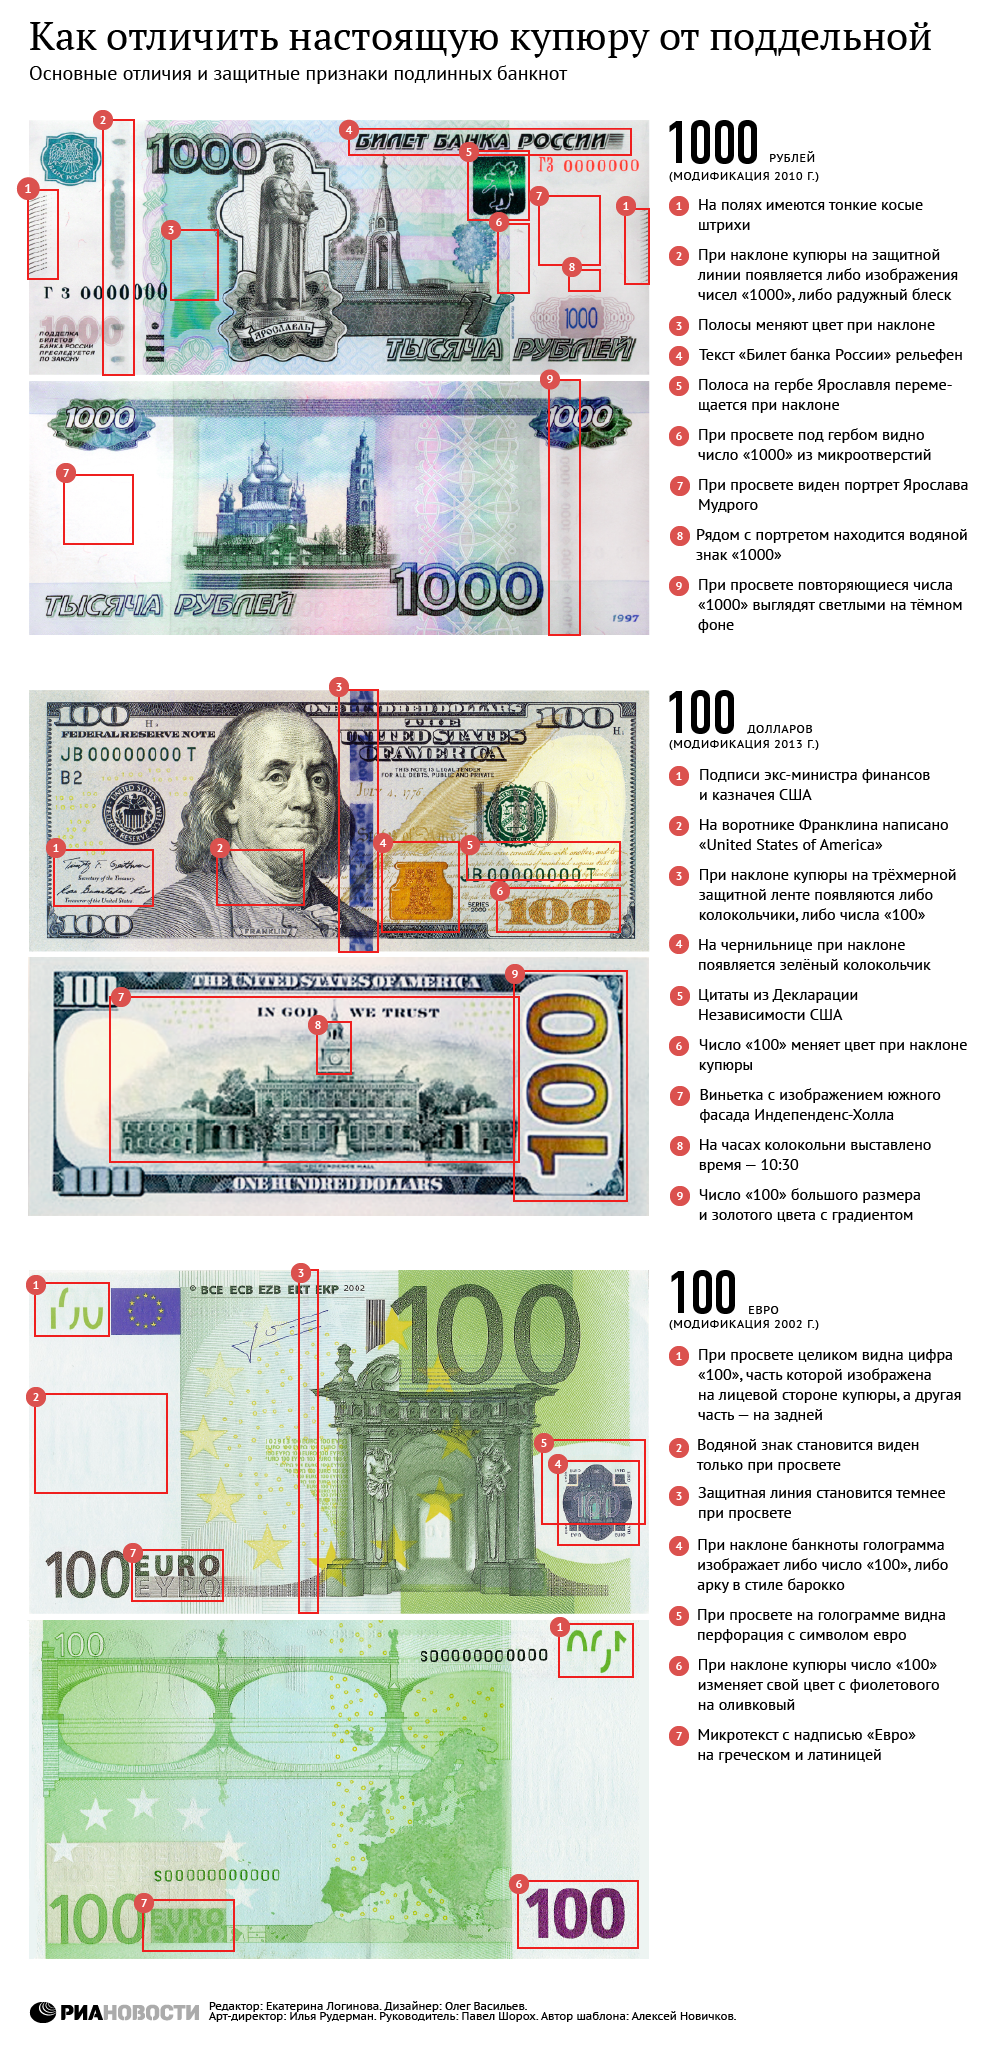 Как отличить настоящую от поддельной. Купюра 100 евро признаки подлинности. Признаки подлинности евро банкнот. Как распознать фальшивую купюру. Как отличить поддельную купюру.